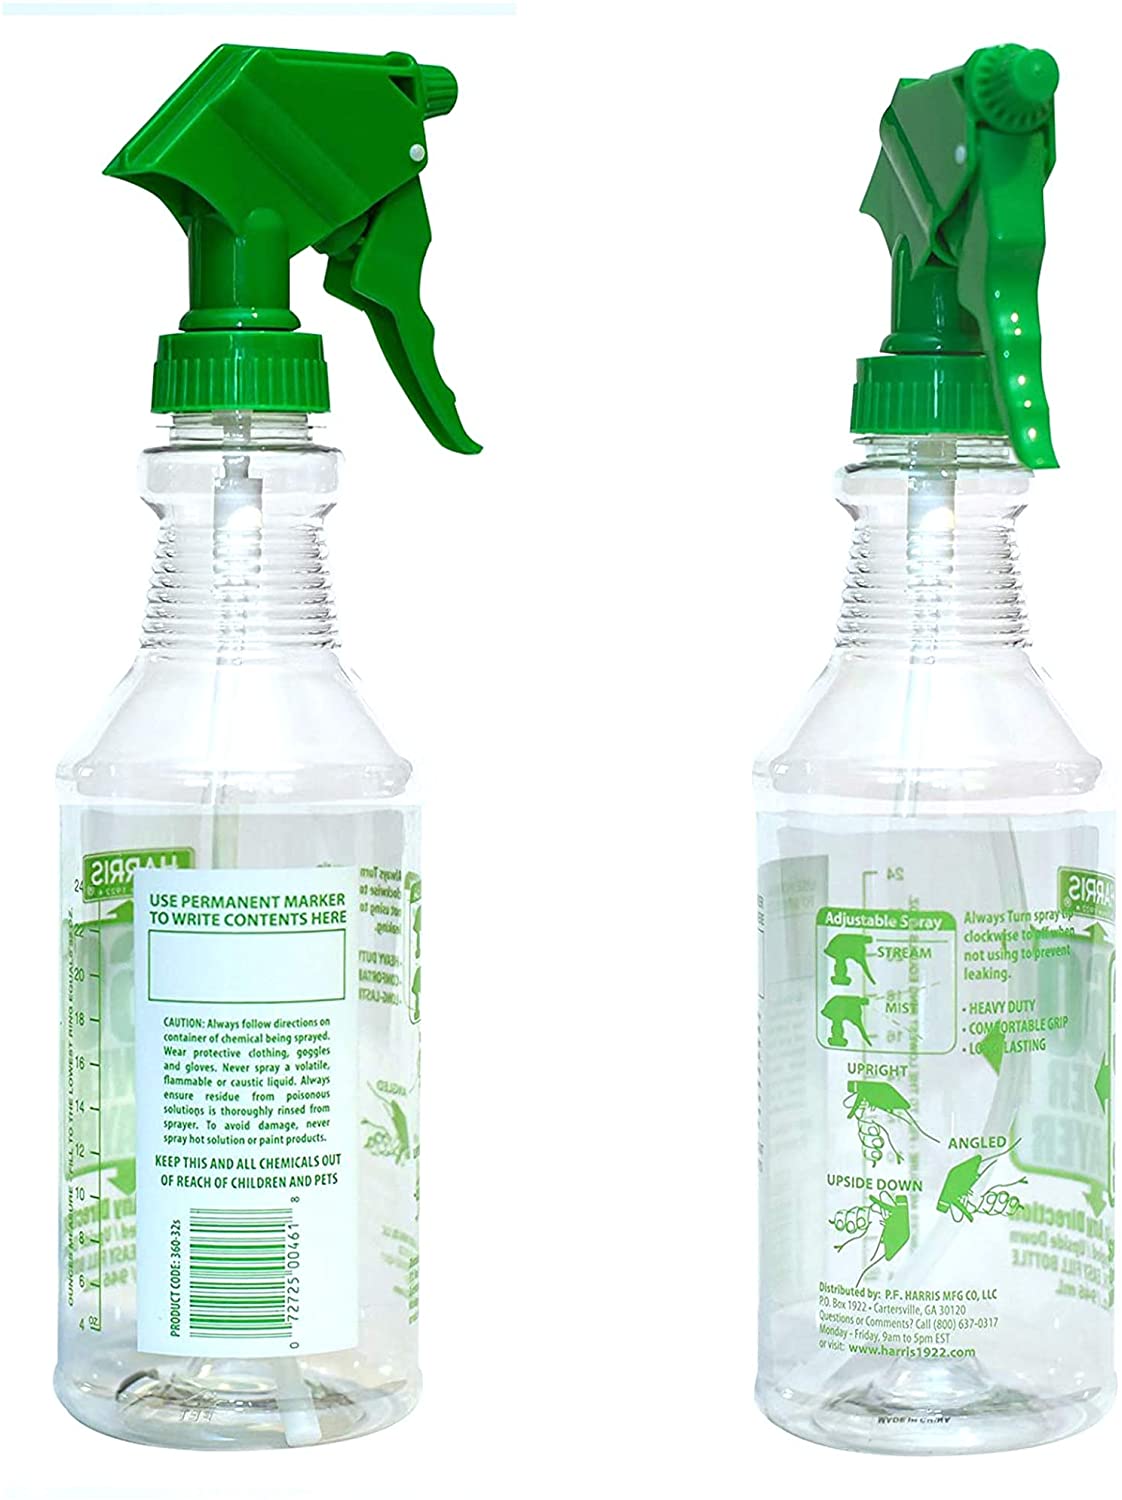 Harris Professional Spray Bottle for Horses 32 fl.oz (3-Pack) - PF